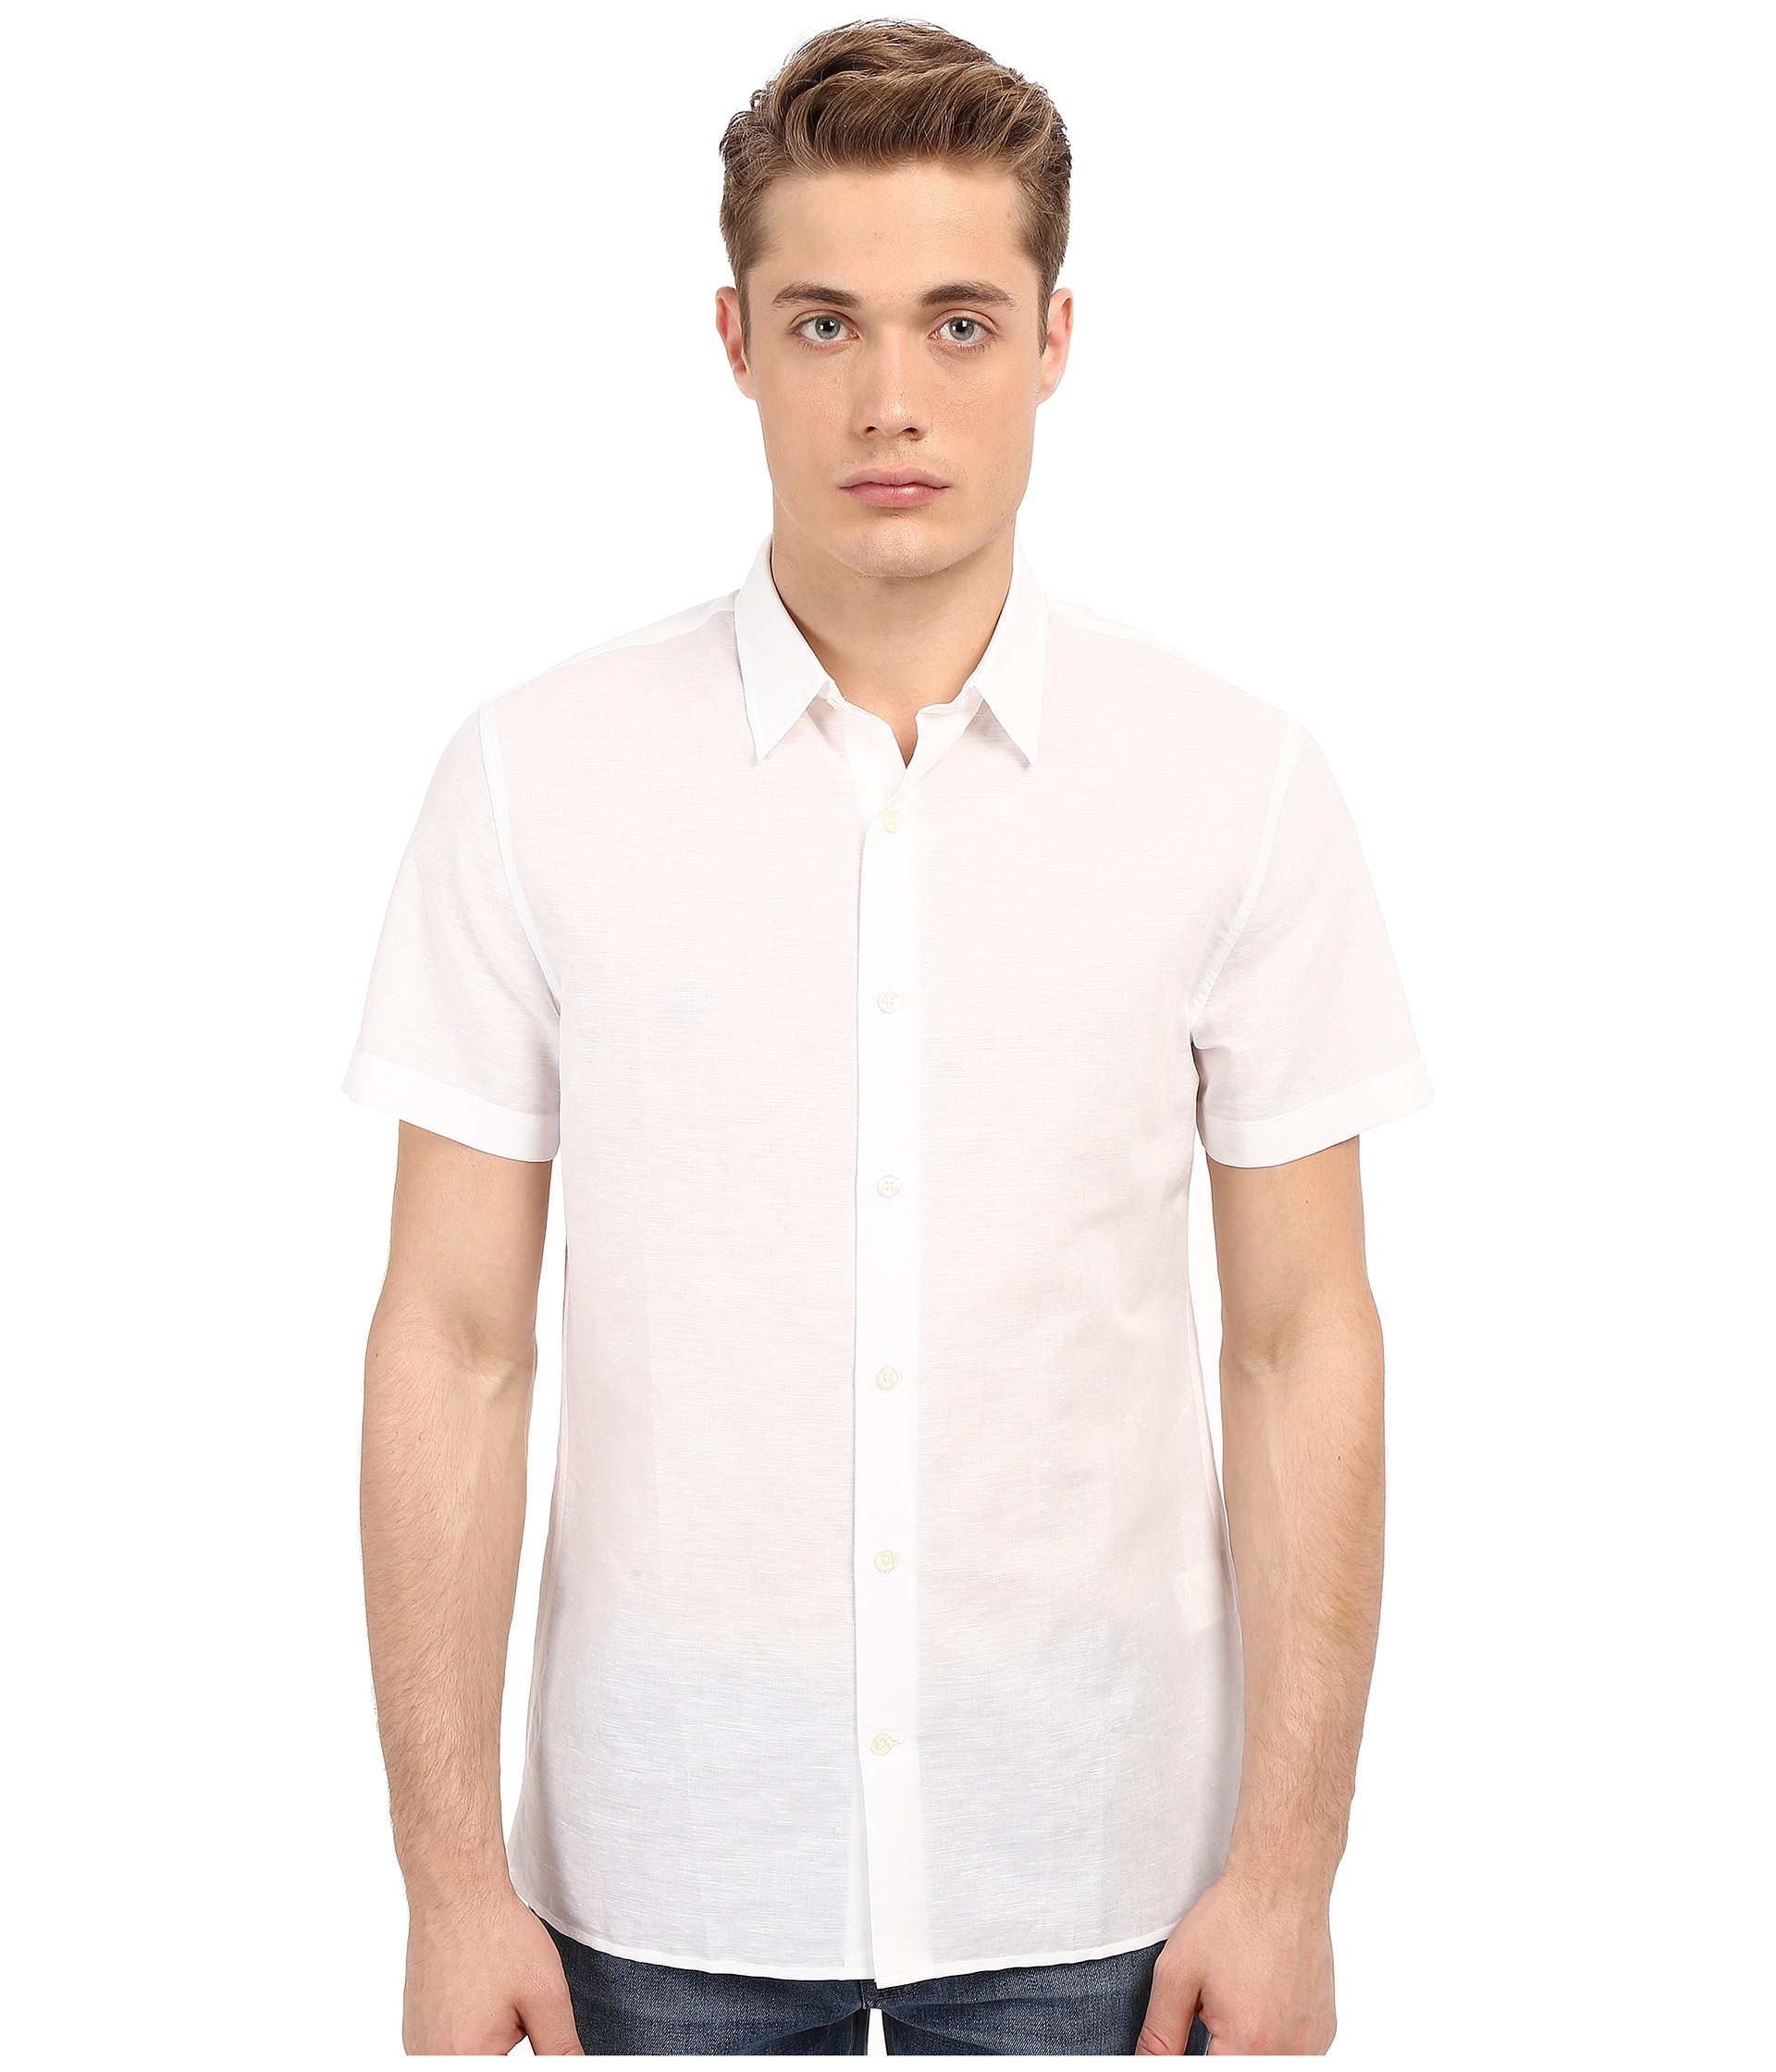 Vince Linen Short Sleeve Melrose Shirt in White for Men - Save 63% | Lyst